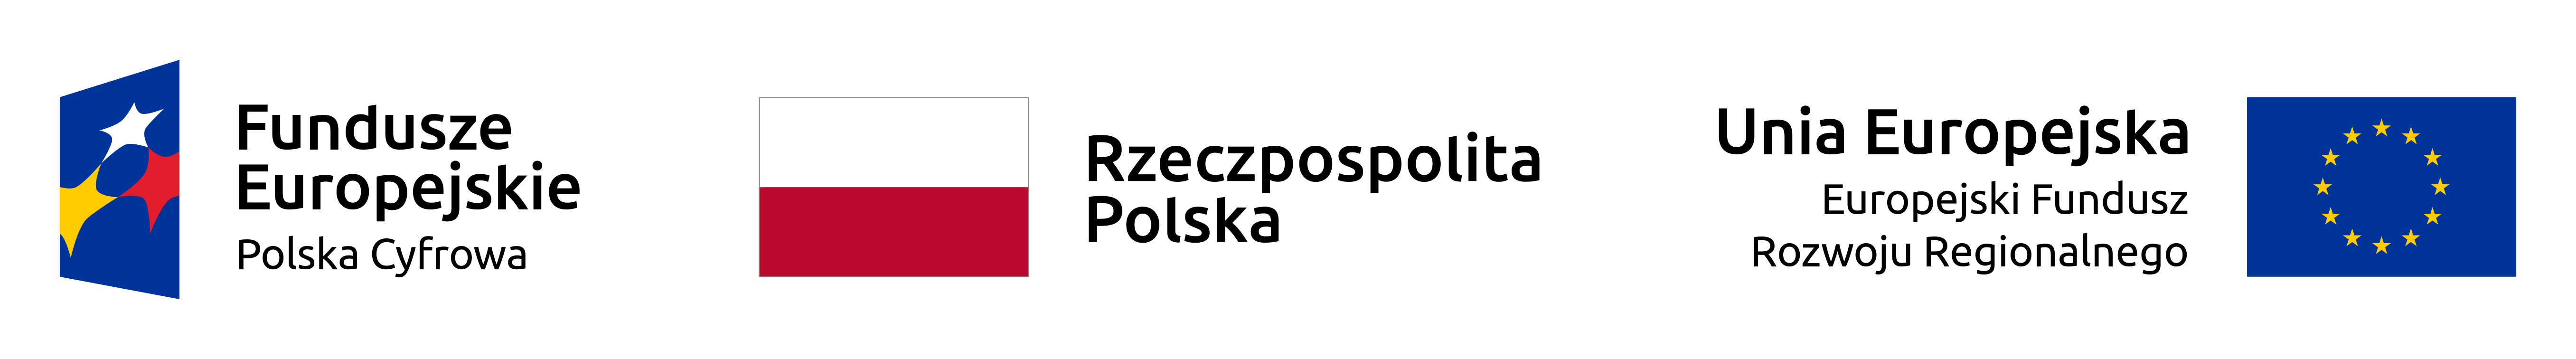 logotypy uczestników projektu: Funduszy Europejskich, Rzeczpospolitej Polskiej (flaga biało-czerwona) i Unii Europejskiej (niebieska flaga z gwiazdami)